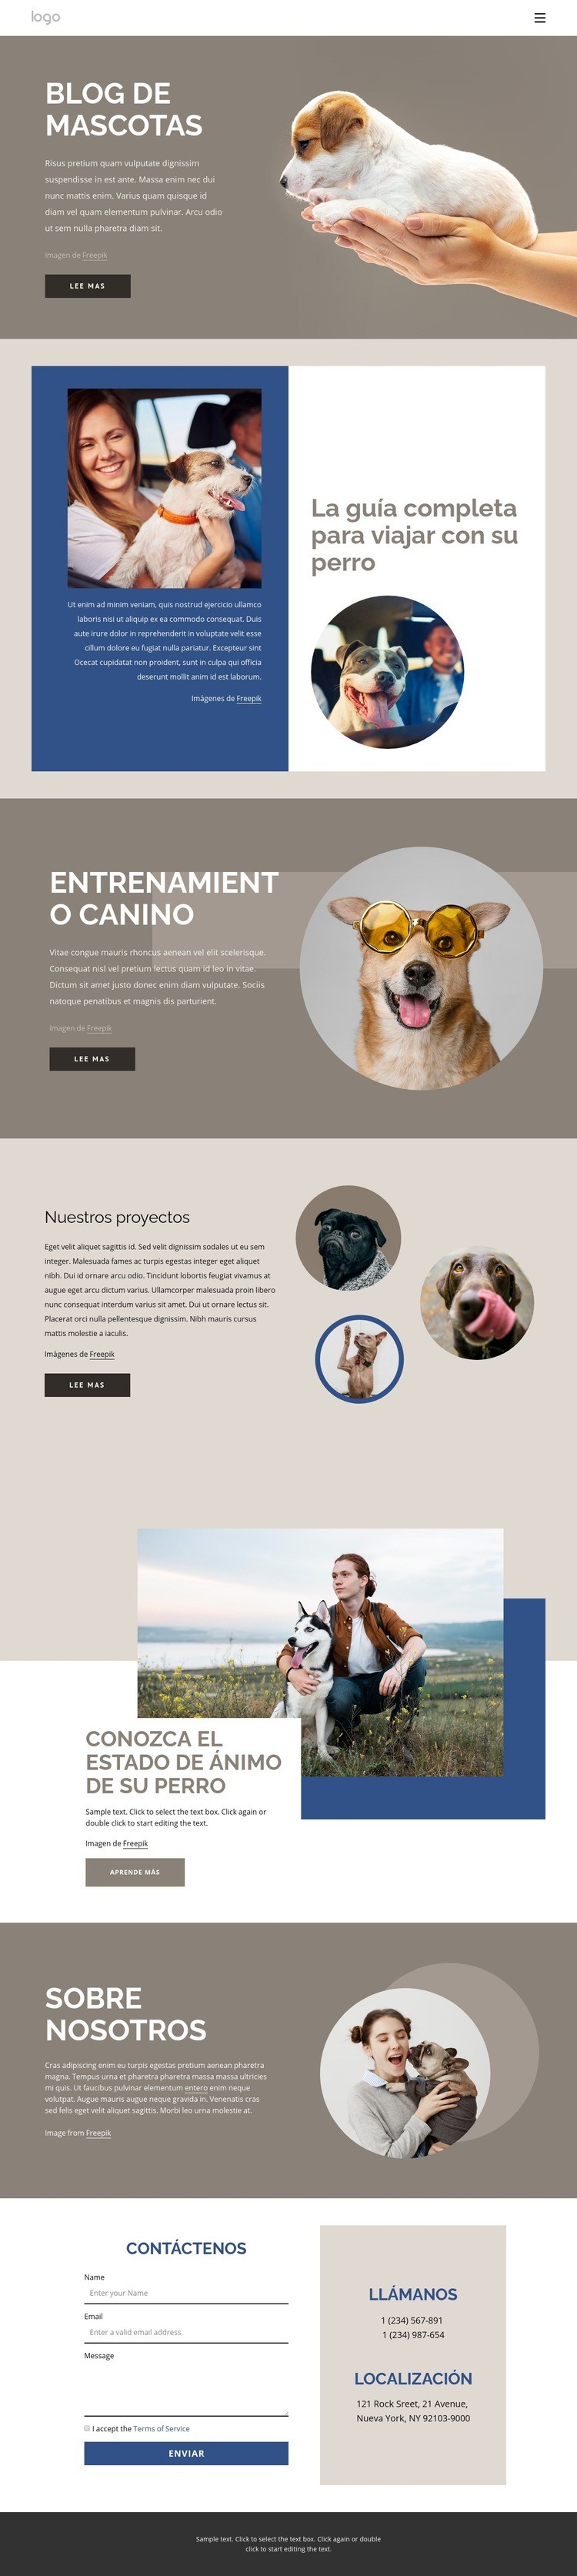 Blog de mascotas Diseño de páginas web